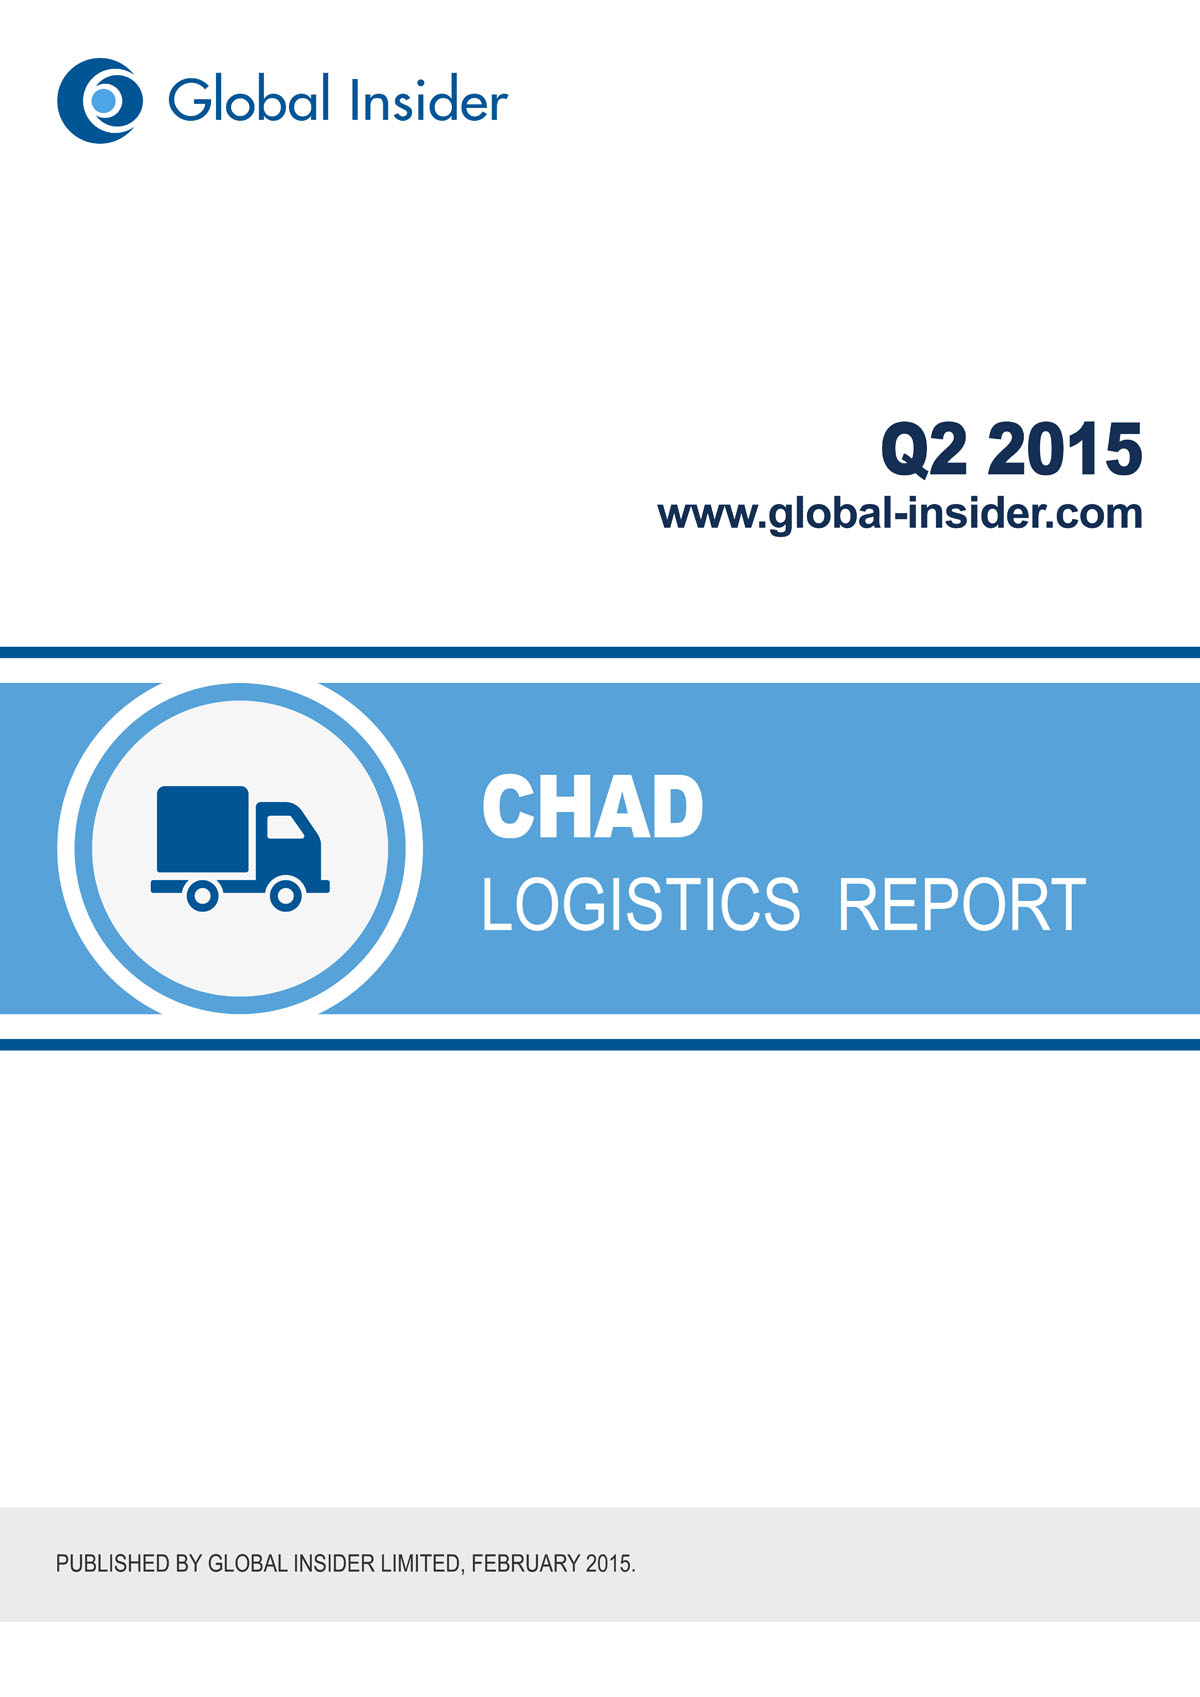 Chad Logistics Report